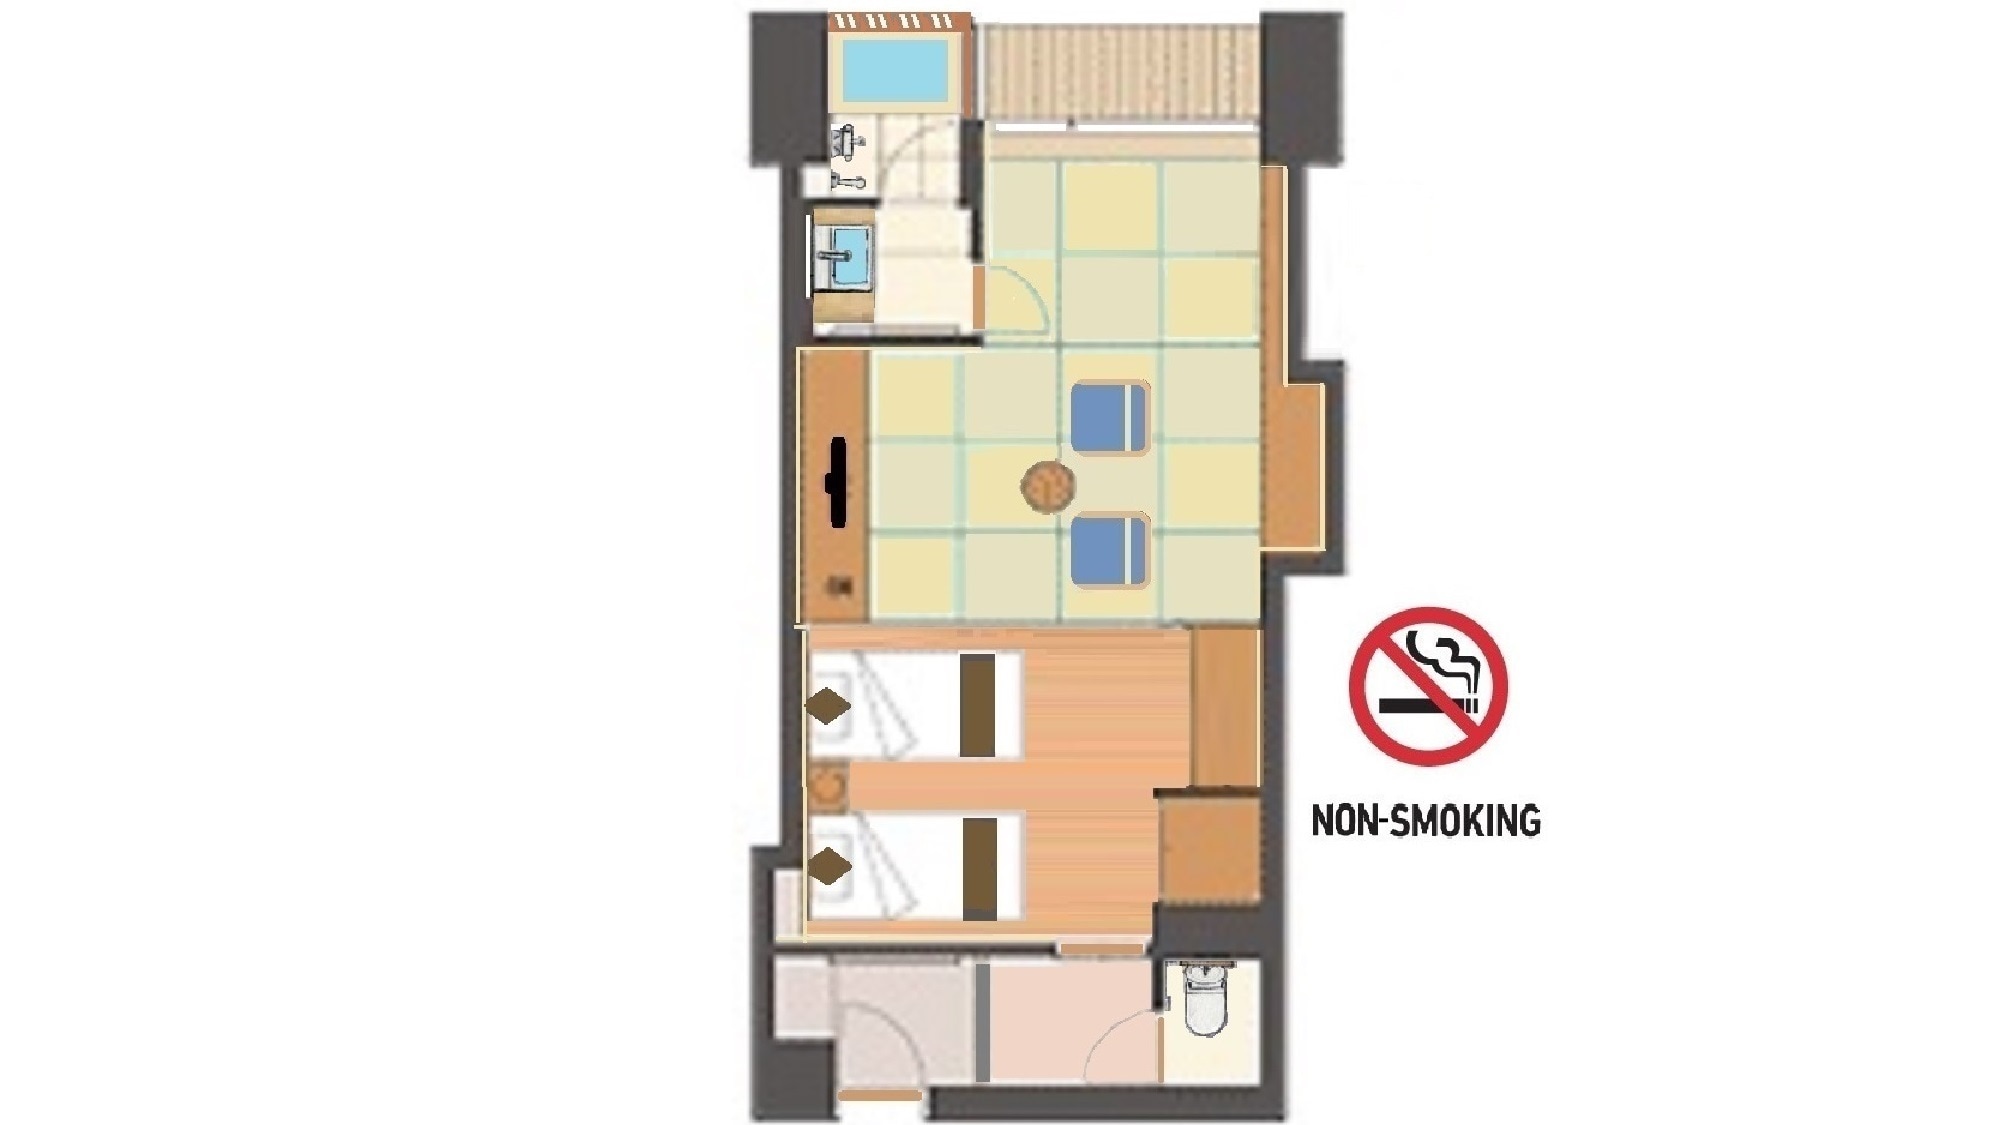 Contoh denah lantai: Kamar bergaya Jepang dan Barat dengan pemandian cemara semi-terbuka di Gedung Barat (bebas rokok)